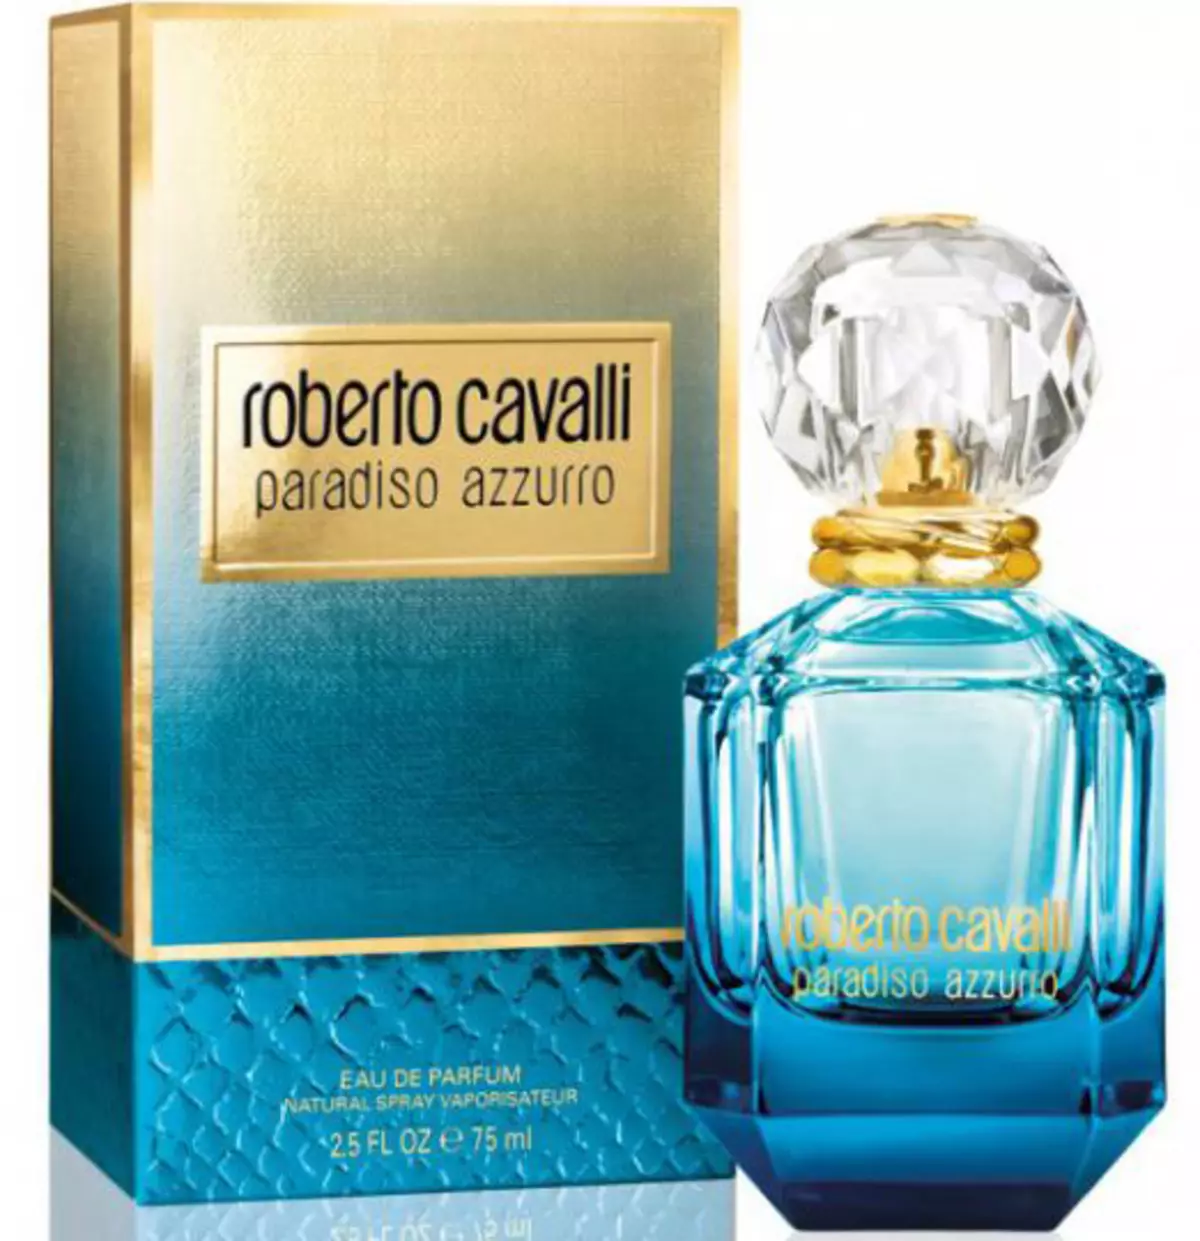 Parfüm Roberto Cavalli: Női parfüm, csak Cavalli és más WC-víz, Armas Roberto Cavalli Eau de Parfum, Paradiso és Acqua 25296_14